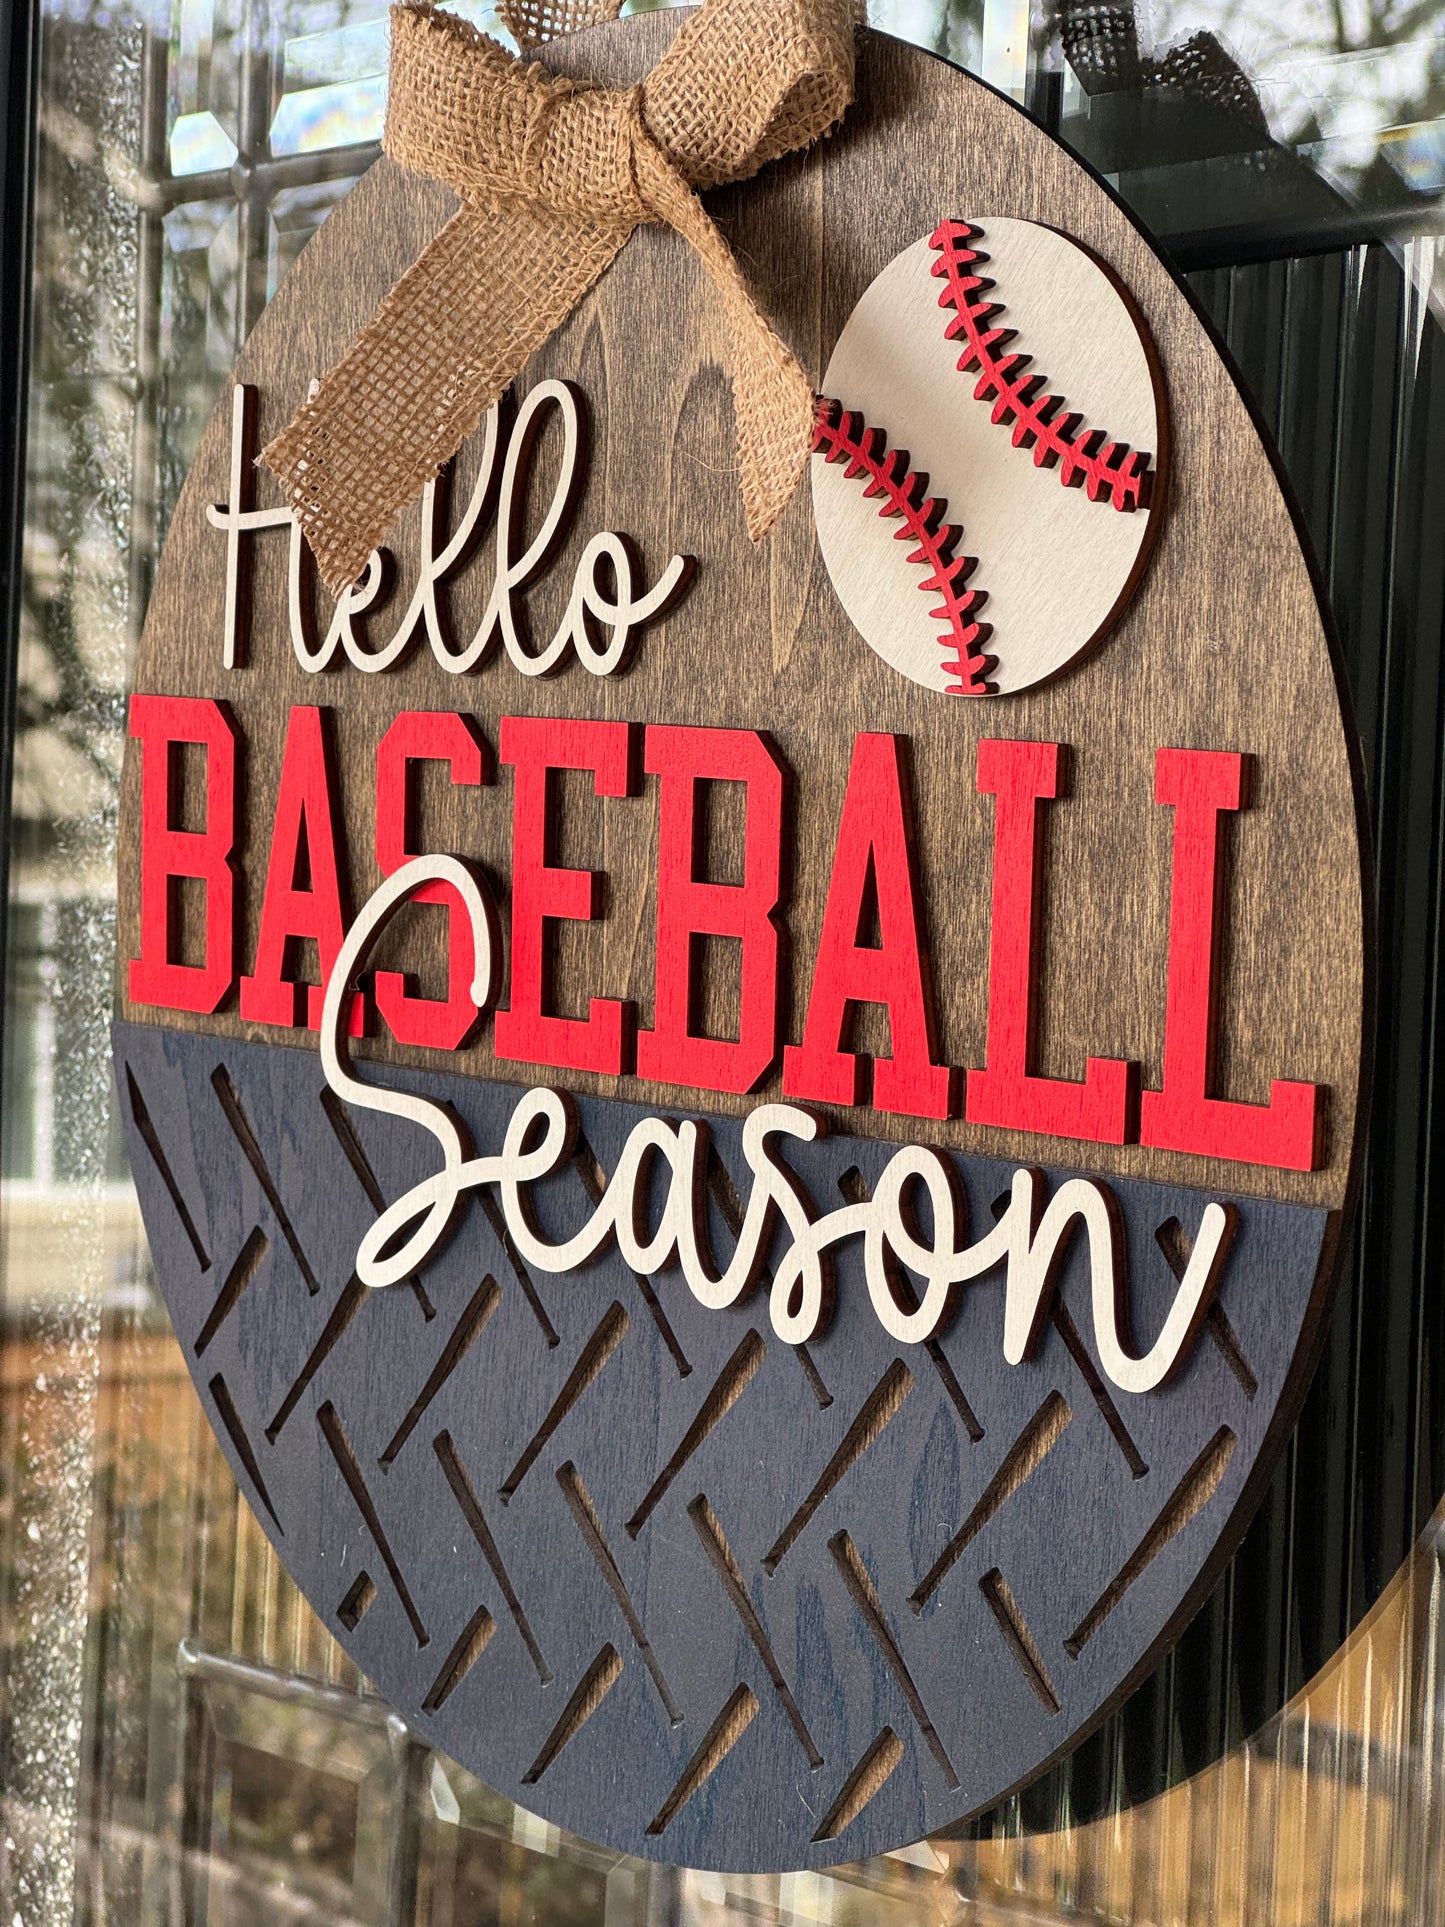 Hello Baseball Season Sign